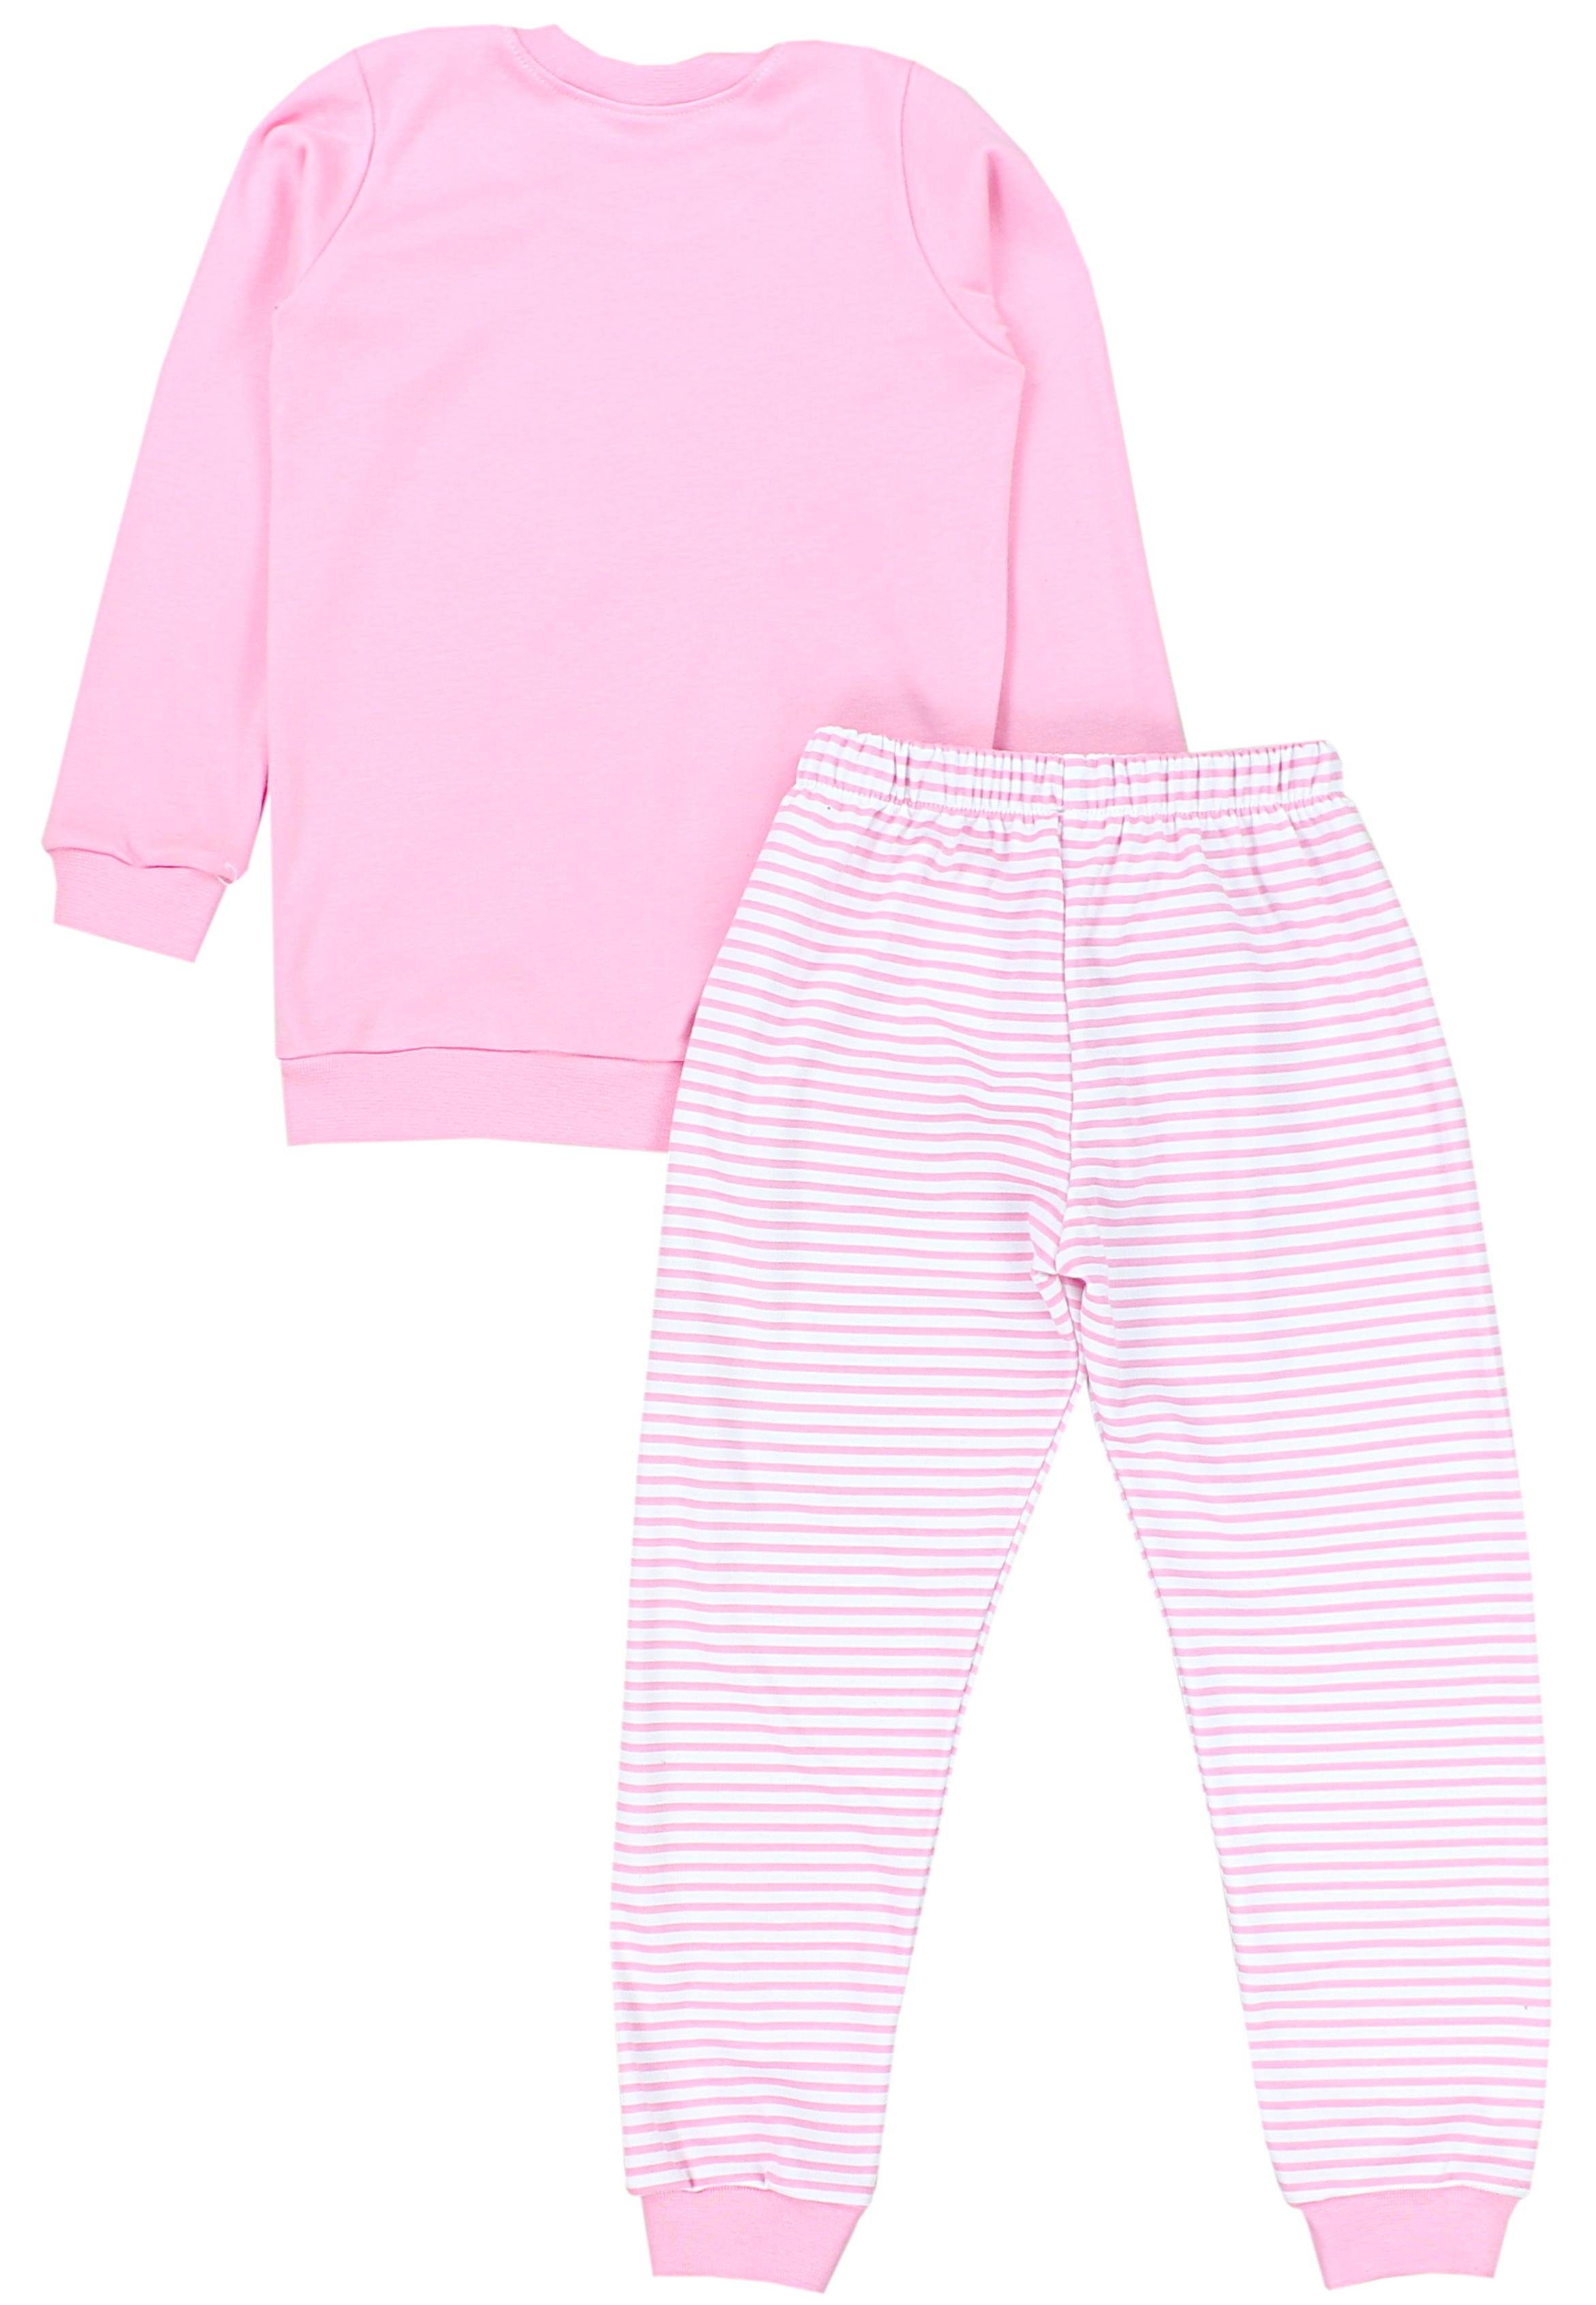 TupTam Schlafanzug Kinder Mädchen Rosa 2-teilig Set Langarm Nachtwäsche Schlafanzug CHOOSE Streifen / Pyjama HAPPY